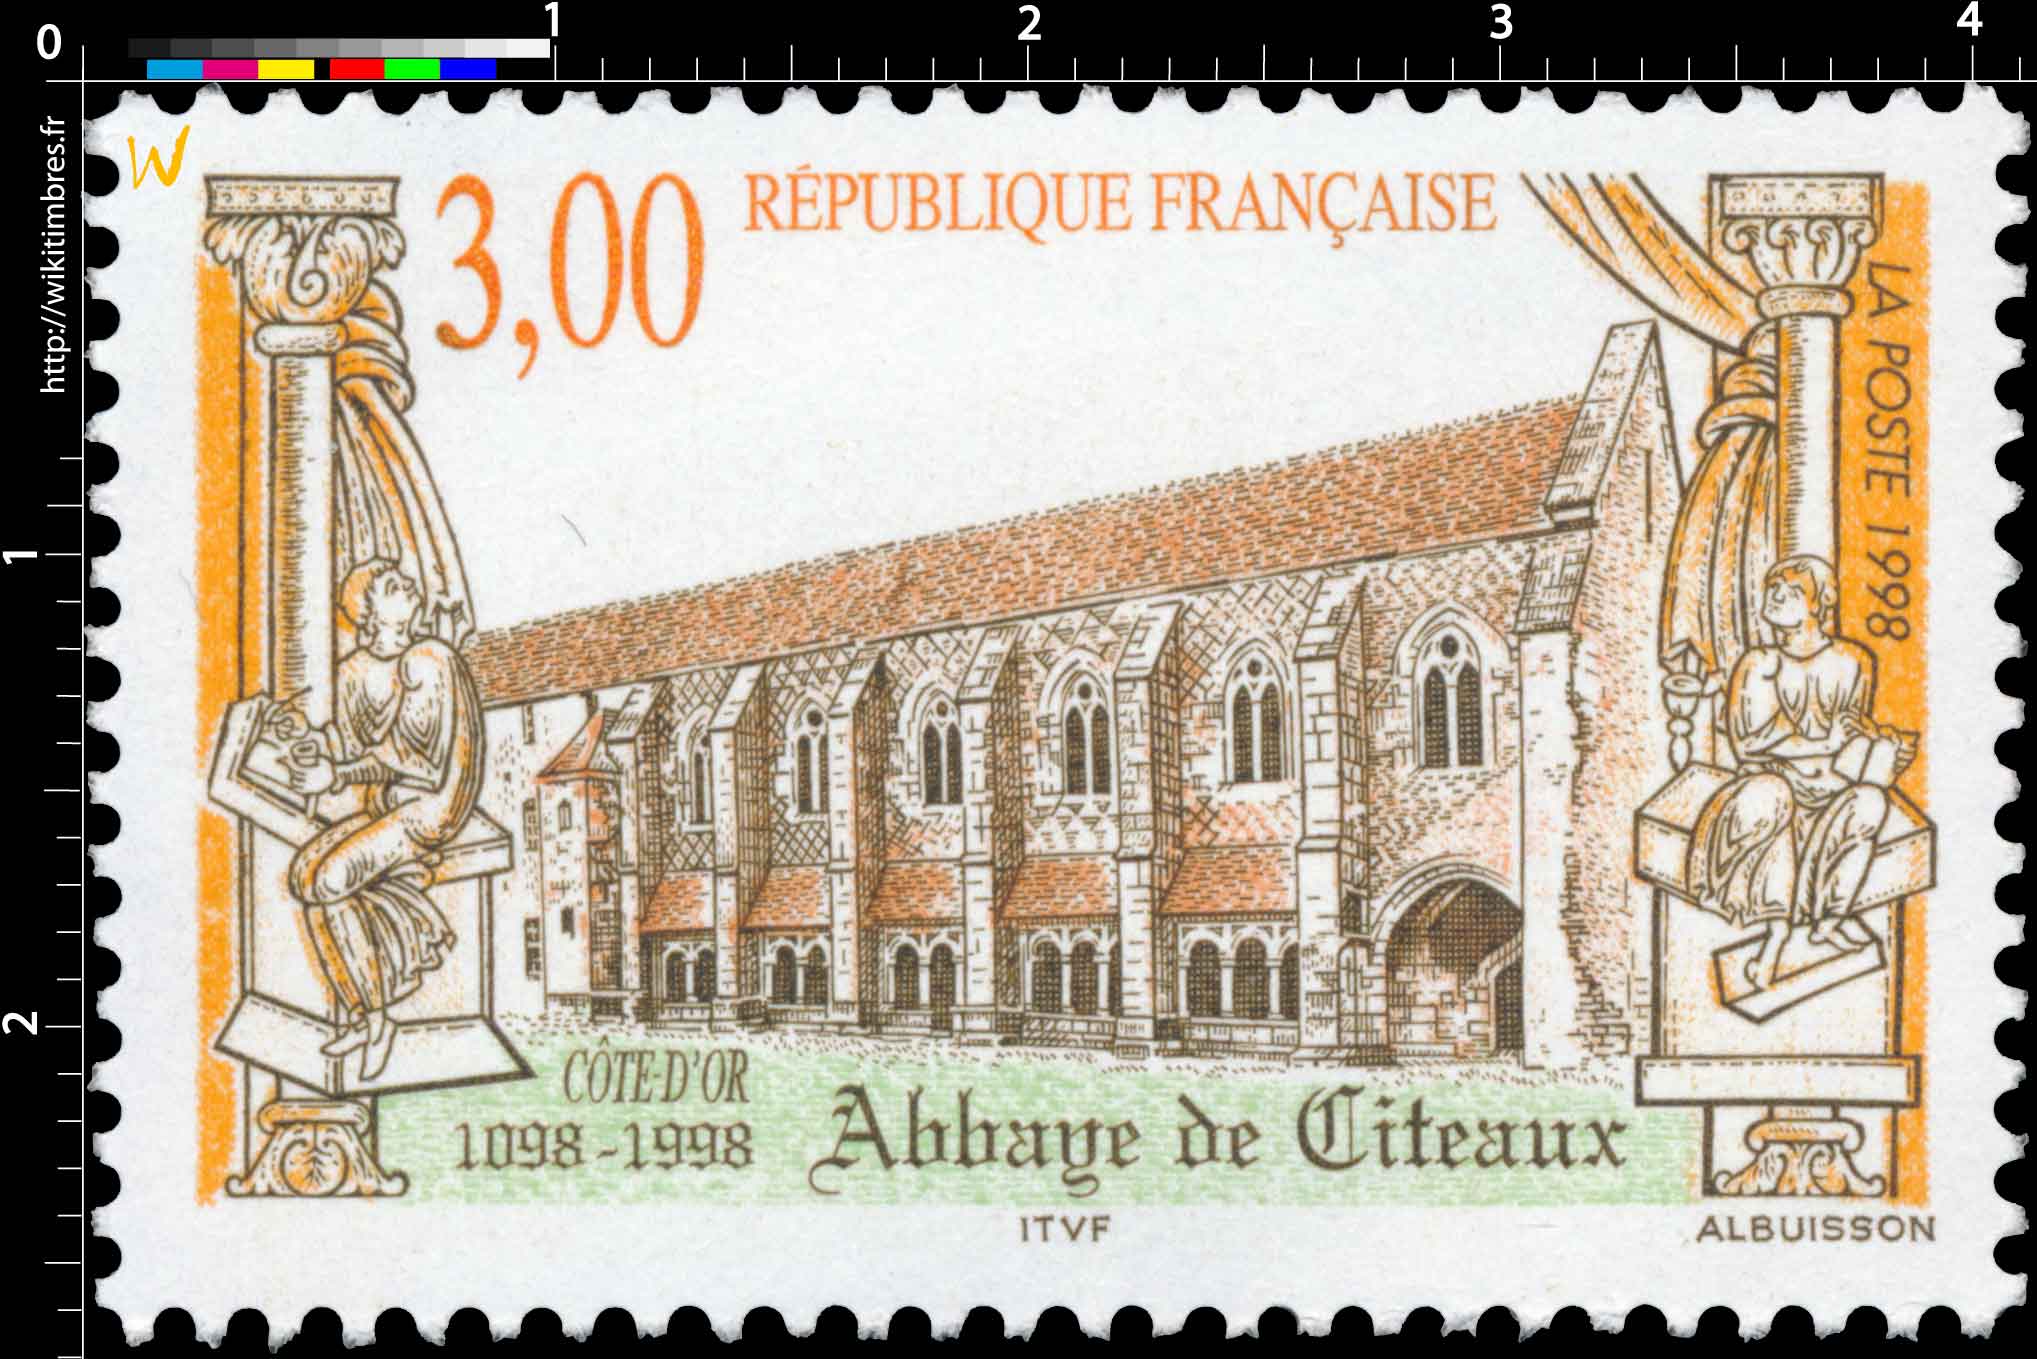 1998 Abbaye de Cîteaux CÔTE D'OR 1098-1998